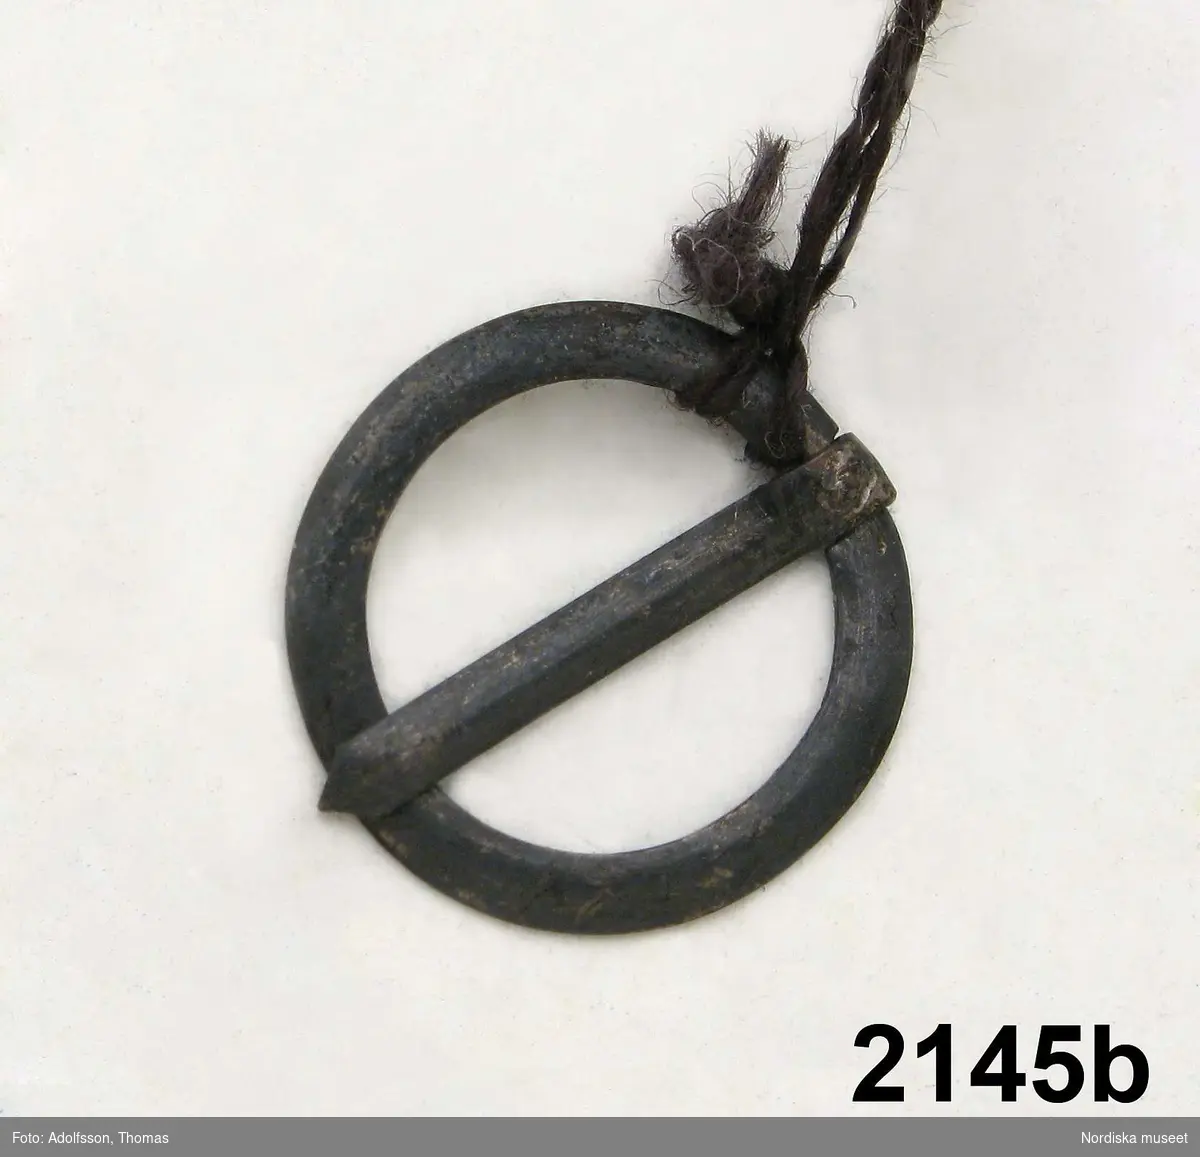 b: Enkelt silverspänne, rund ring med fäste, 17 mm i diameter.
/Inga-Lill Eliasson 2007-12-05